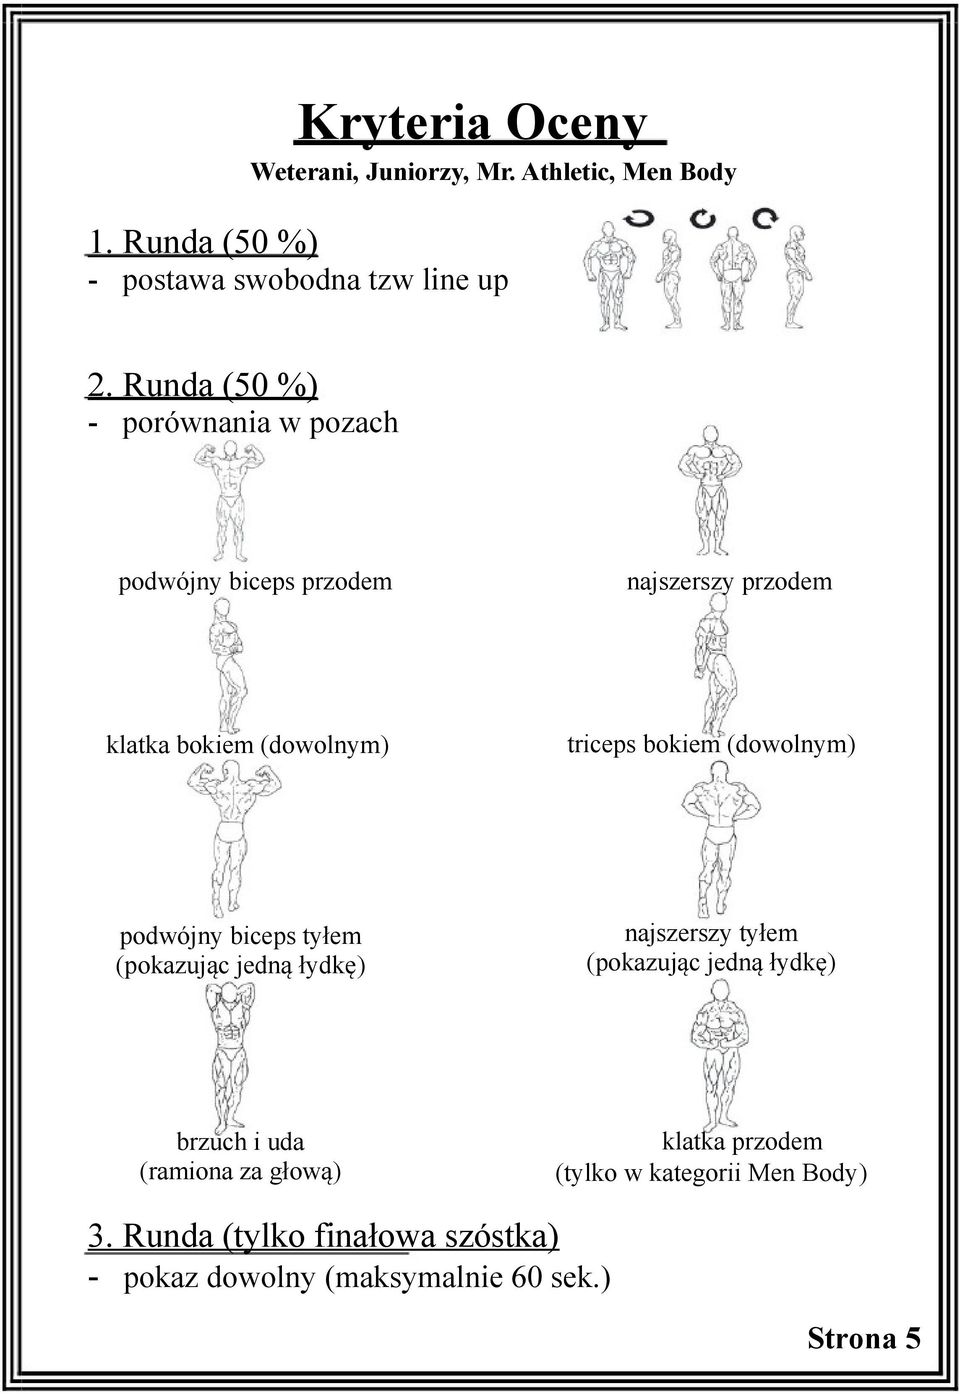 (dowolnym) triceps bokiem (dowolnym) podwójny biceps tyłem najszerszy tyłem brzuch i uda (ramiona za